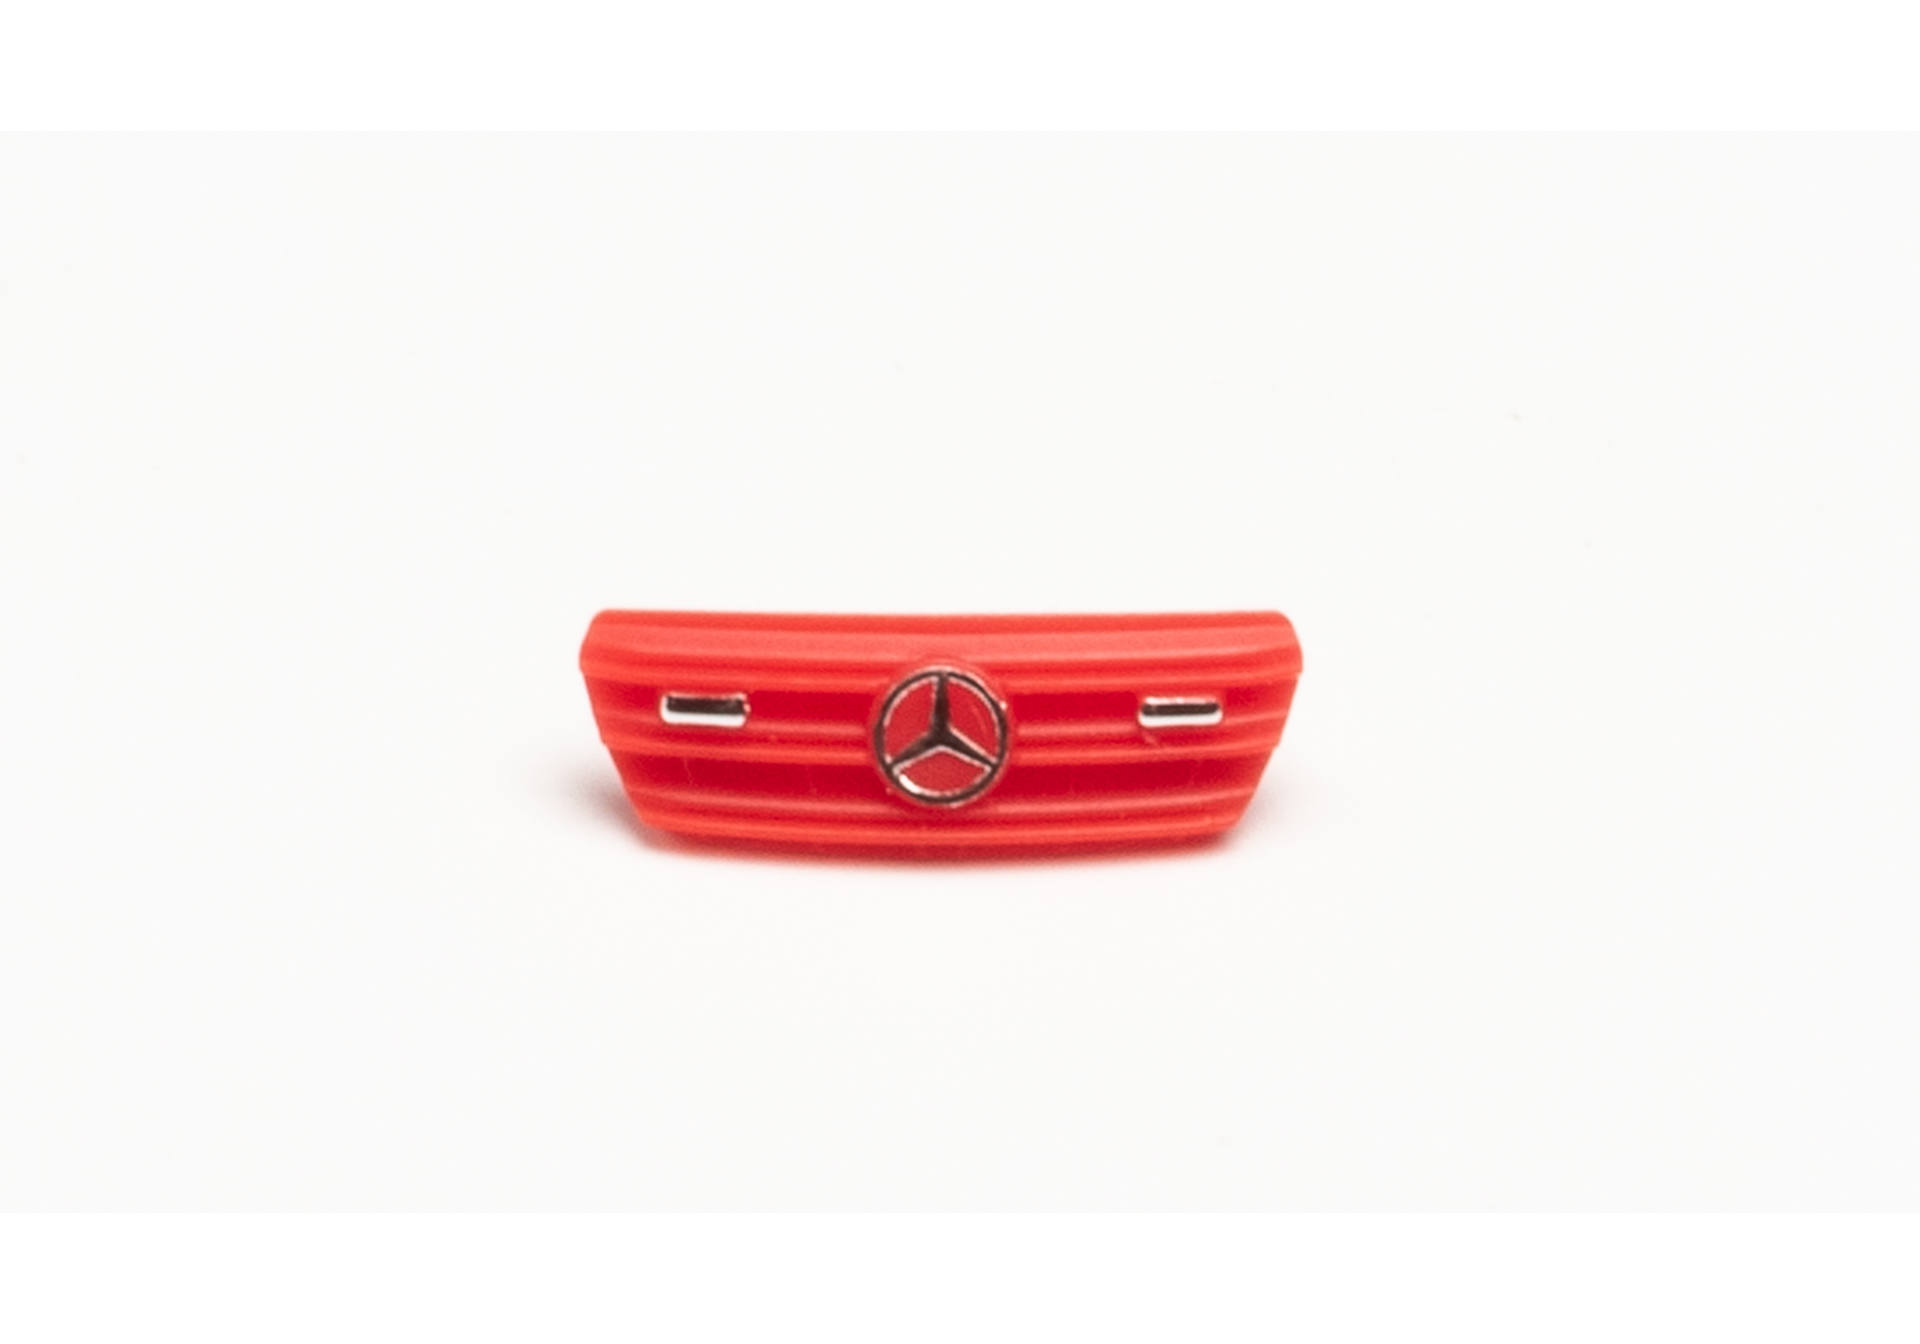 Zubehör Kühlergrill Mercedes-Benz Sprinter `18 mit Frontblitzern, je 2x weiß, schwarz, rot und leuchtrot